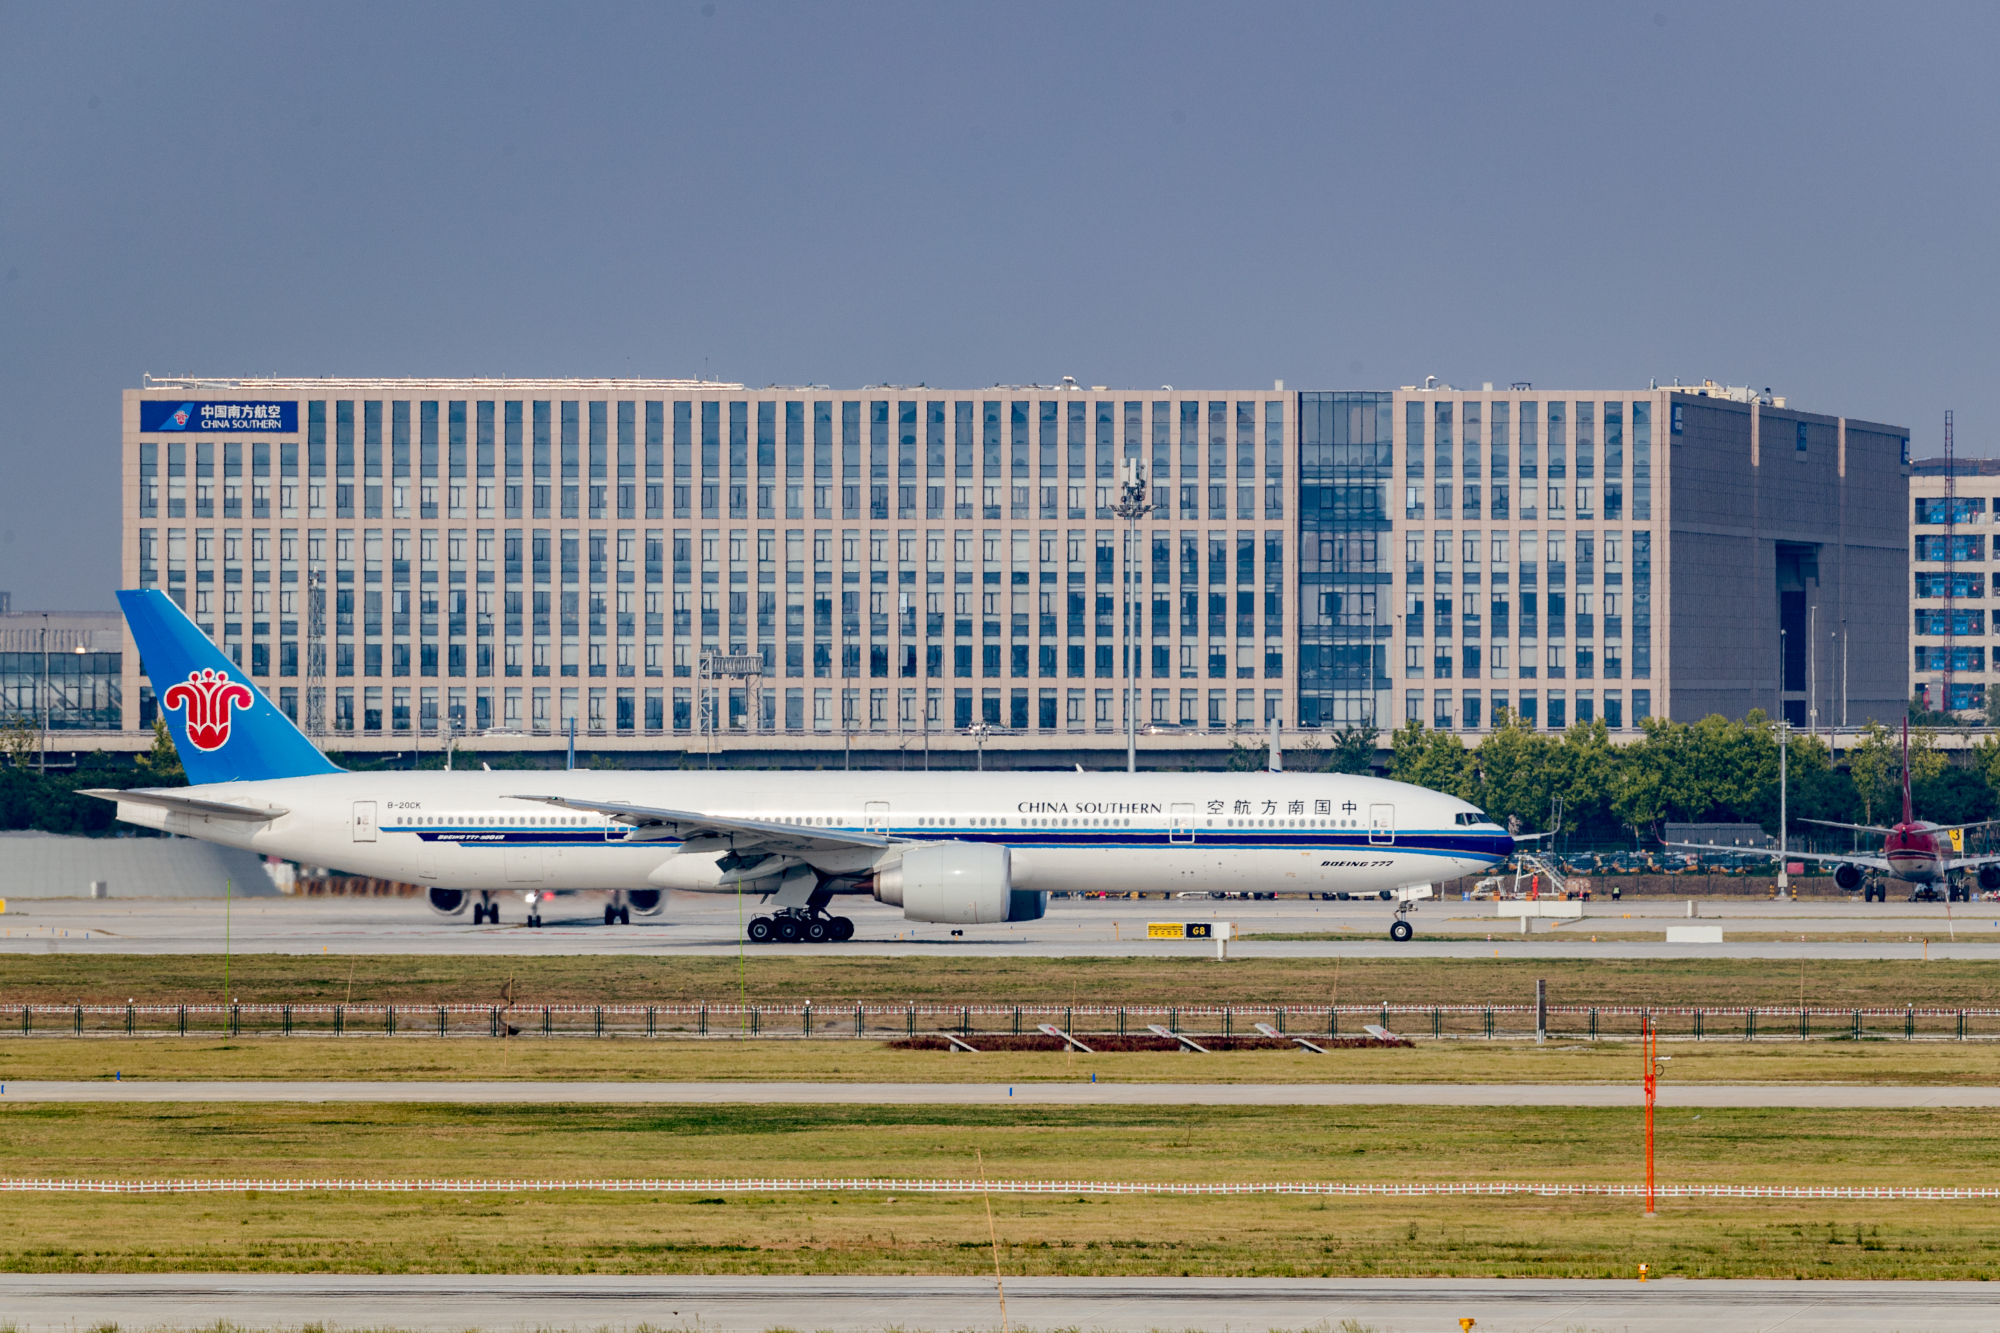 立足北京大興世界級航空樞紐建設 南航全力推動「一帶一路」共建夥伴航維高質量發展